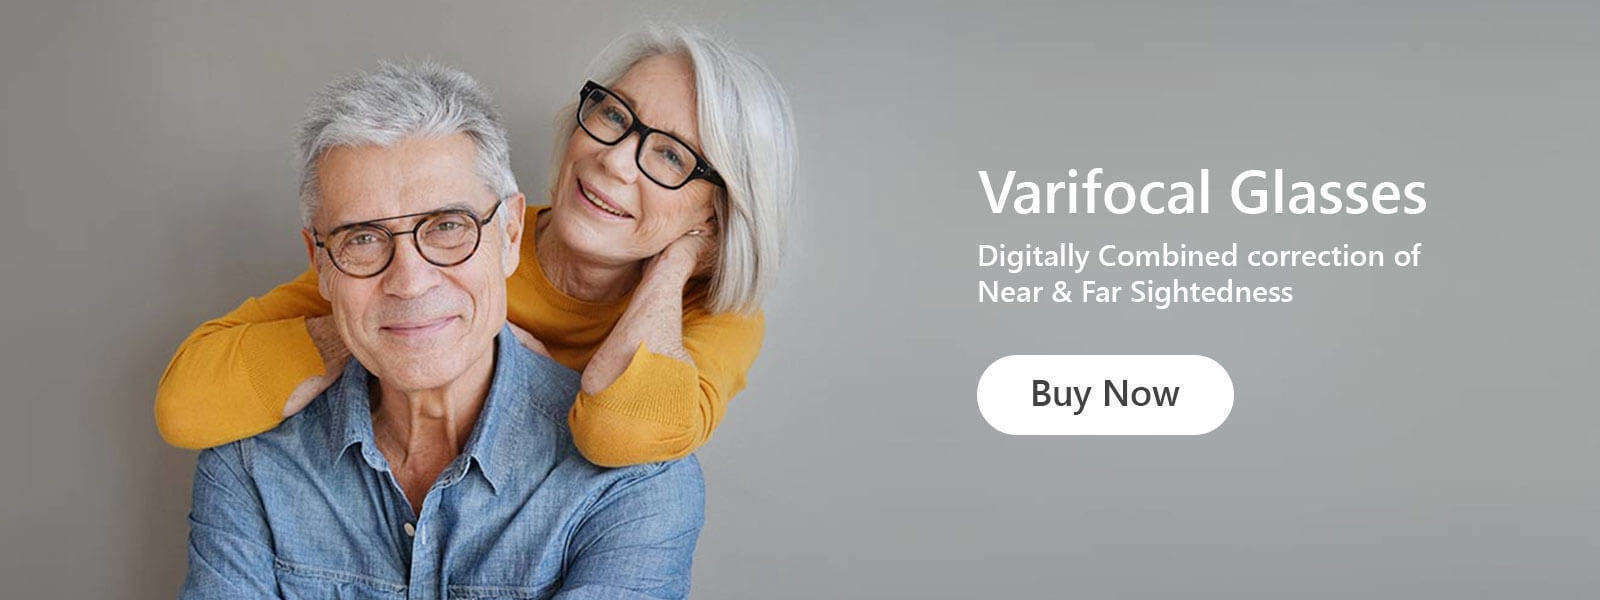 Varifocal Glasses